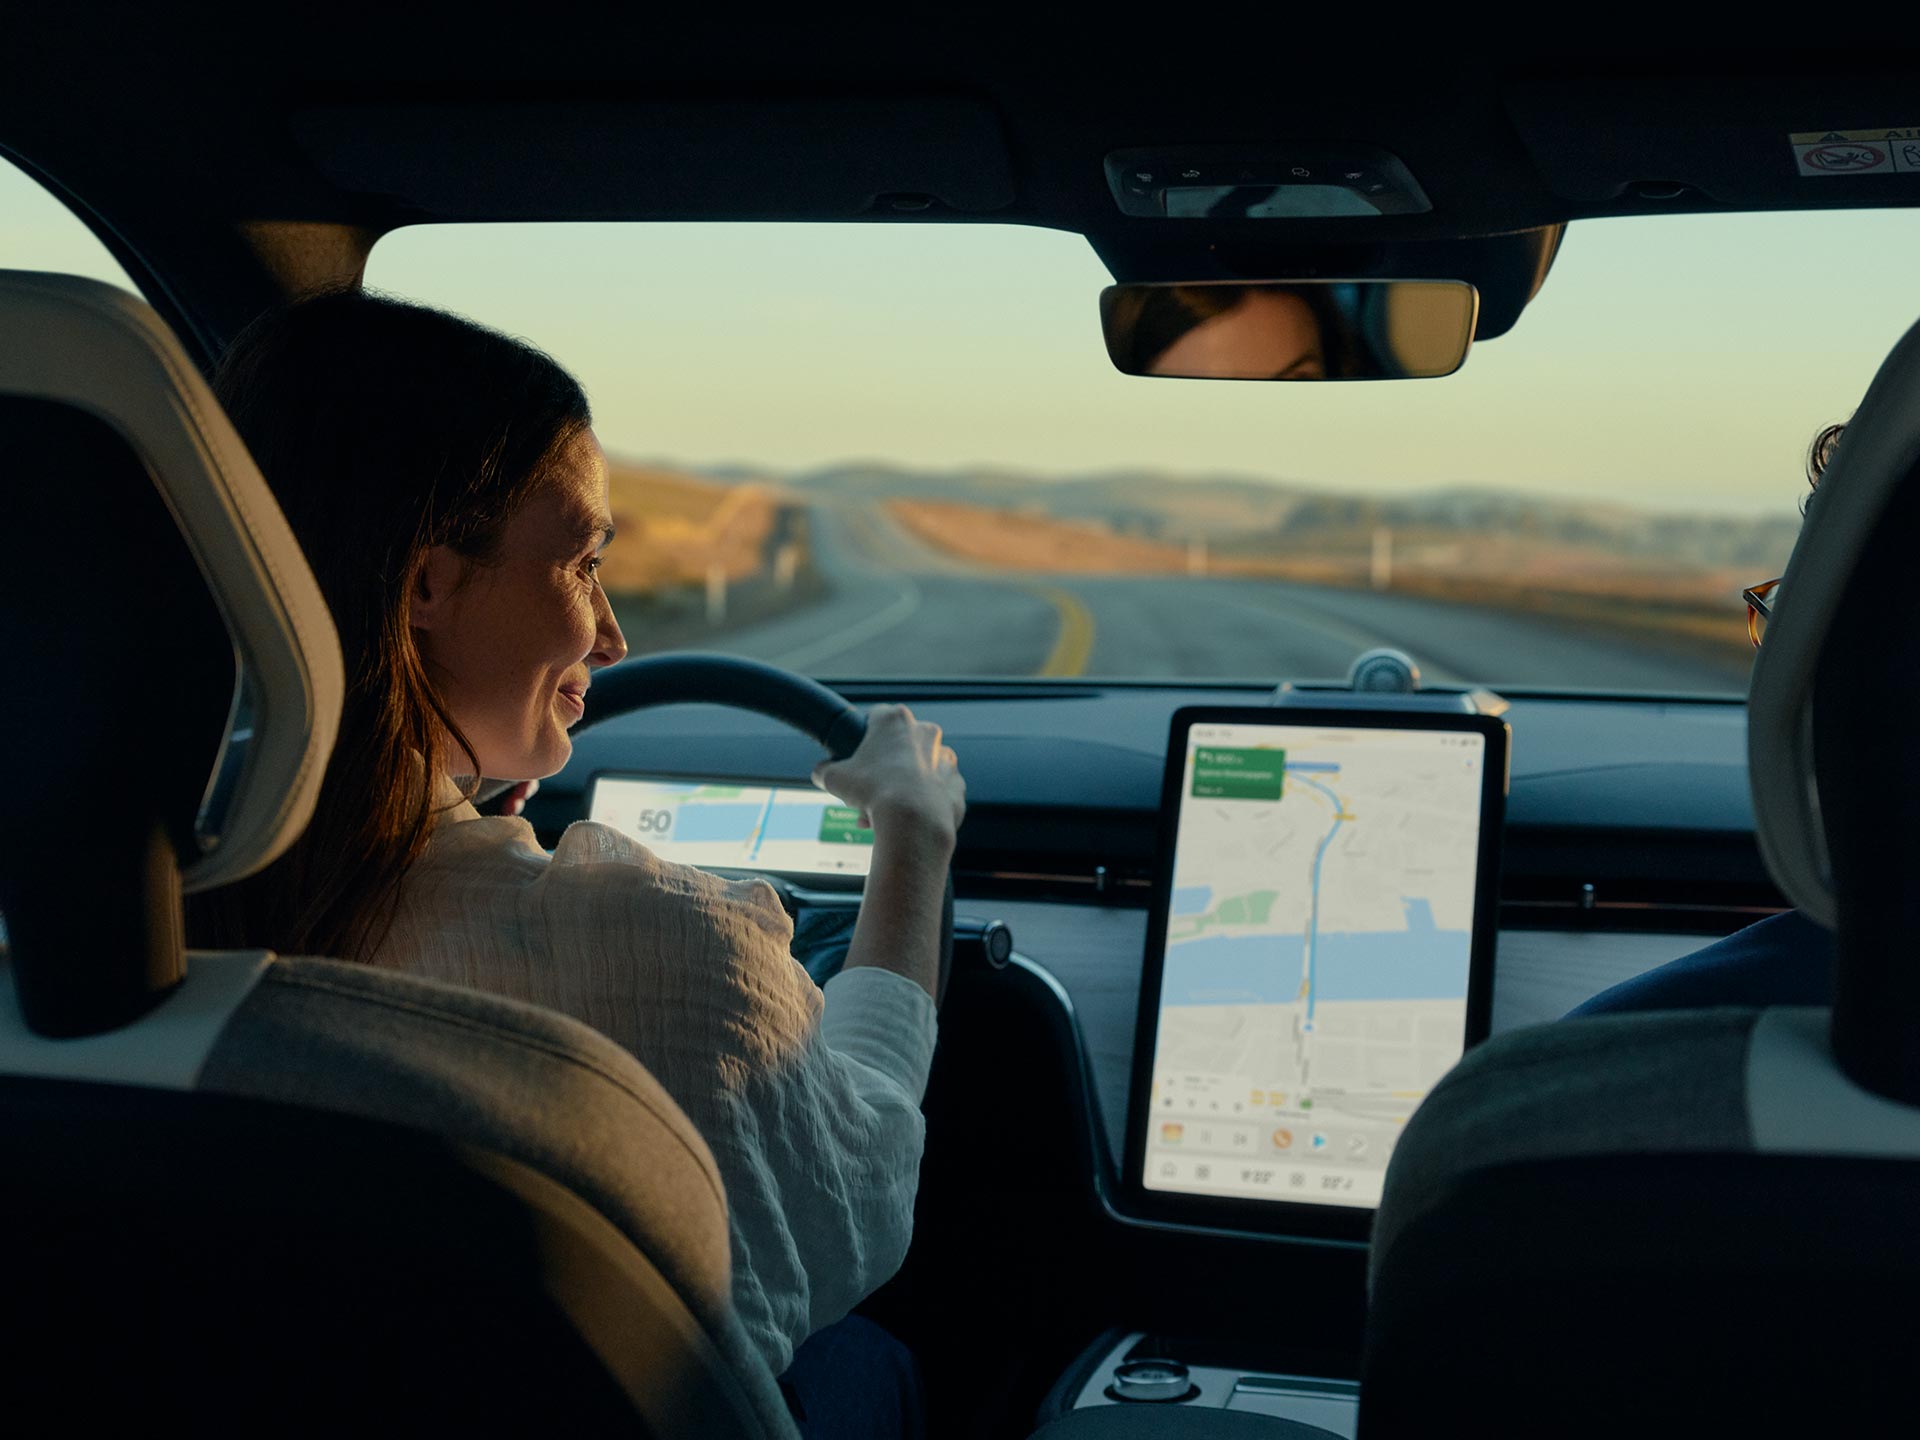 صورة من مقعد الراكب الخلفي لامرأة تبتسم وهي تنظر إلى الشاشة المركزية الكبيرة والمضيئة في سيارتها فولفو.